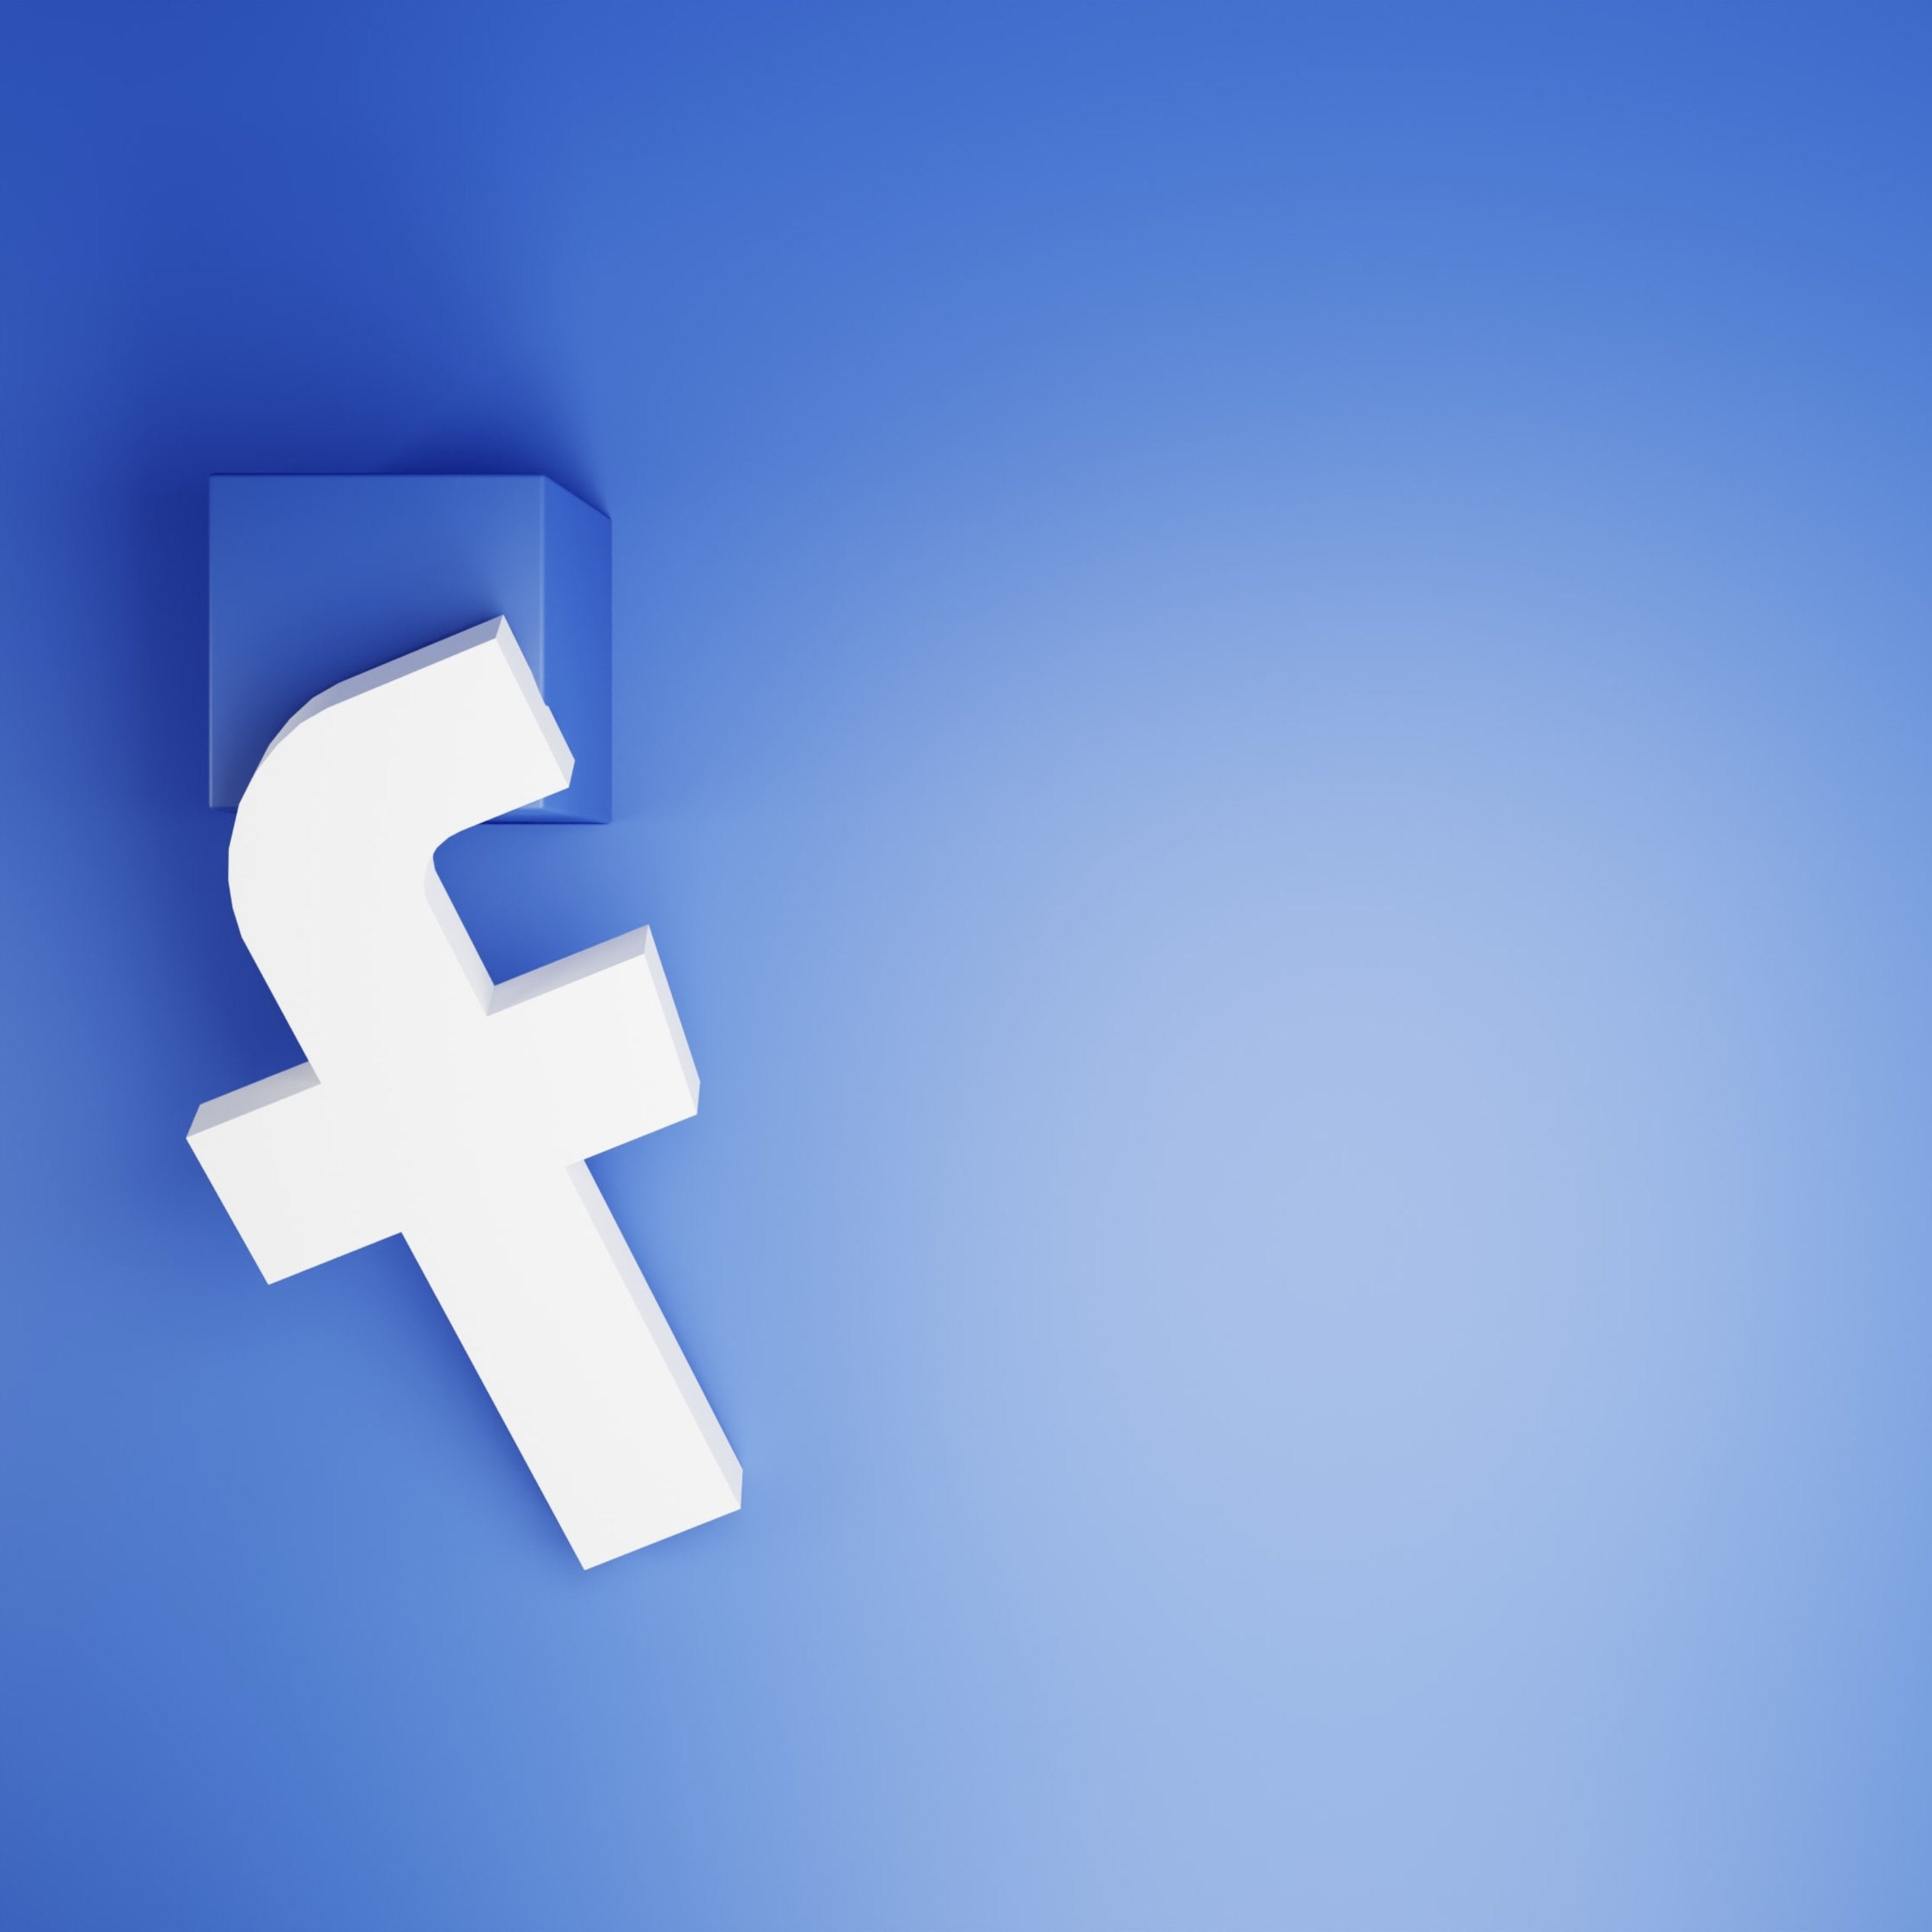 12 motius pels quals podries ser bloquejat i expulsat de Facebook